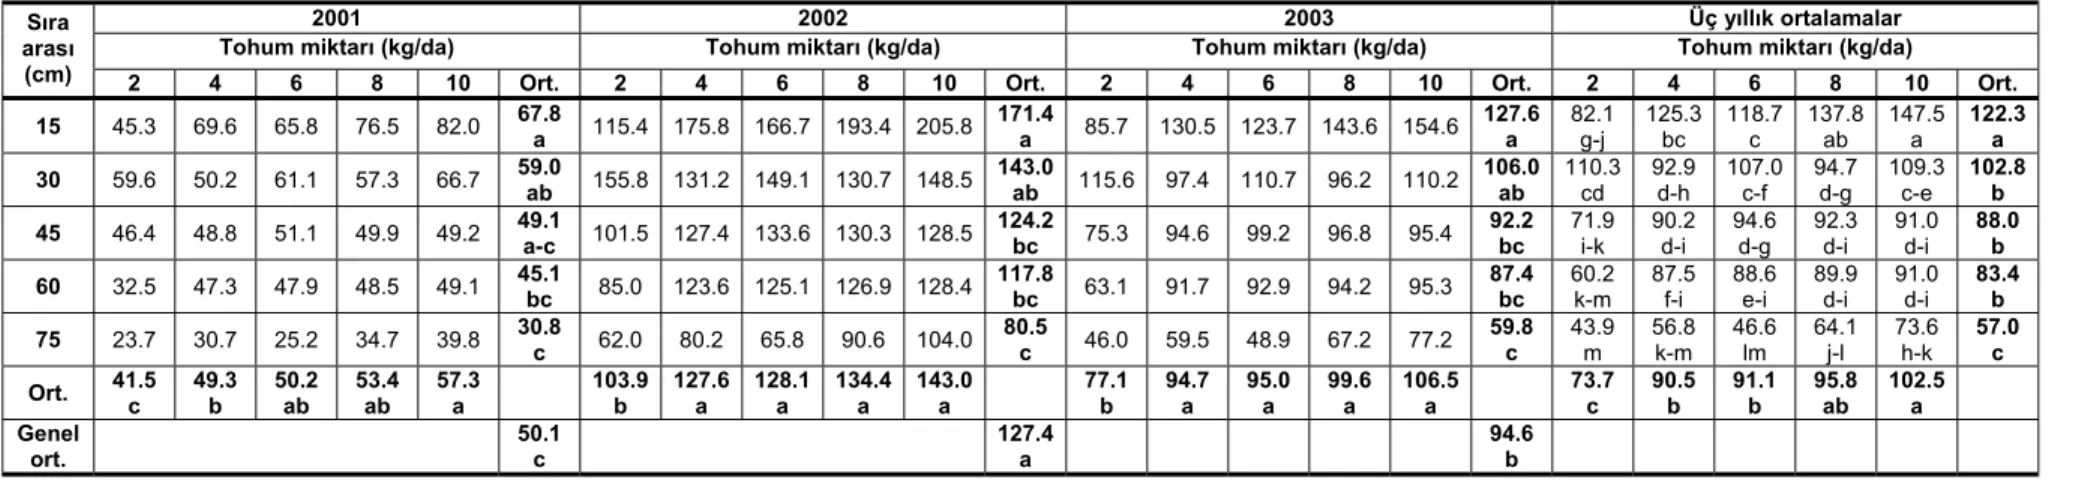 Çizelge 4. Farklı sıra aralıkları ve tohum miktarları ile yetiştirilen korungada ortalama ham protein verimleri (kg/da) 